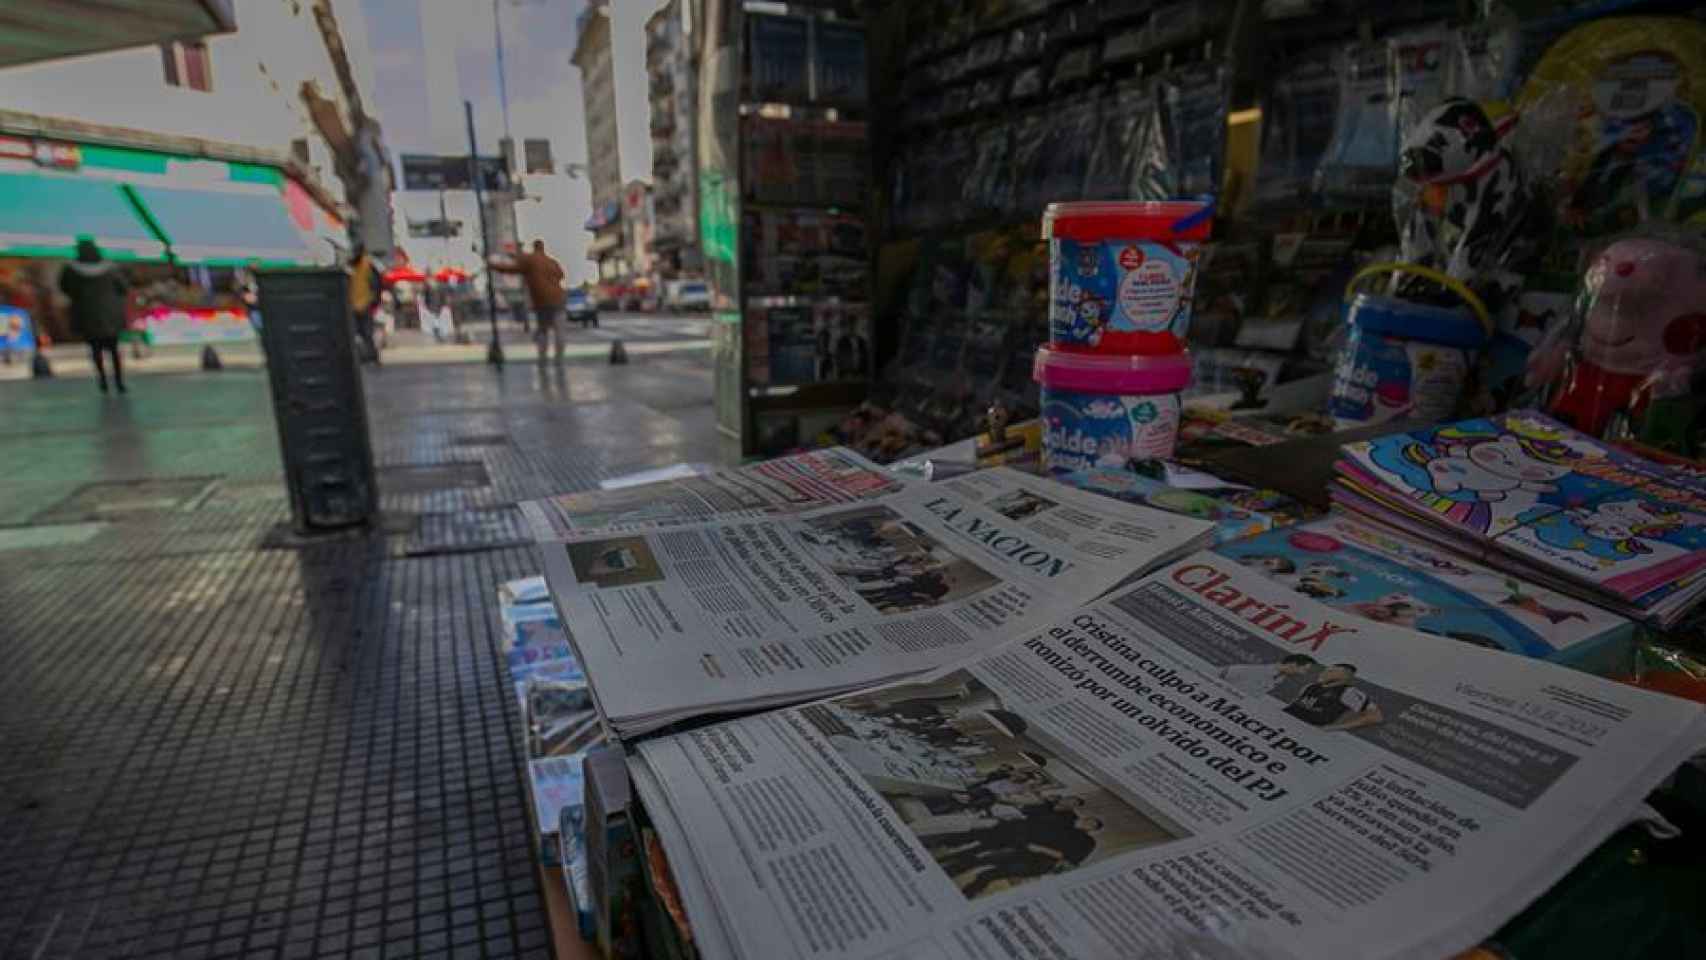 Portadas de los periódico Clarín y La Nación en un puesto de venta del centro de la capital.